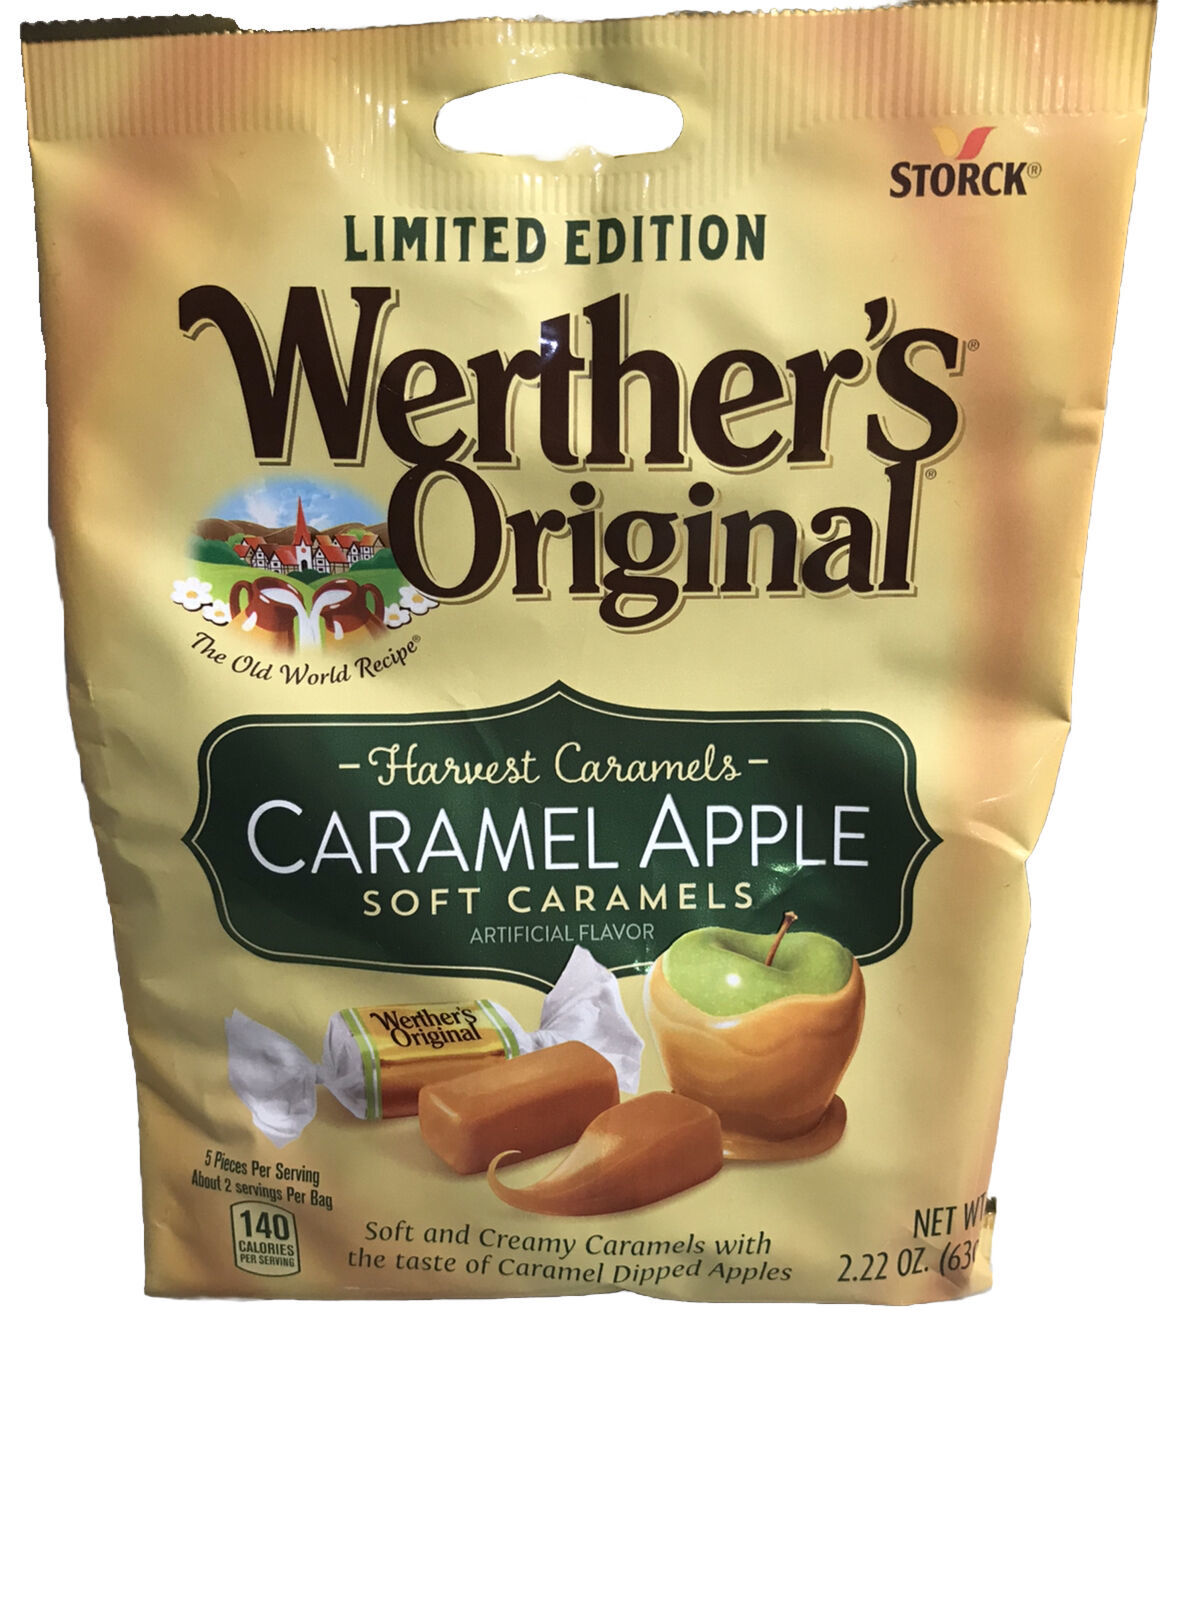 Storck Limited Edition Weather’s Original Caramel Apple Soft Caramels:2.22oz/63g - $7.80